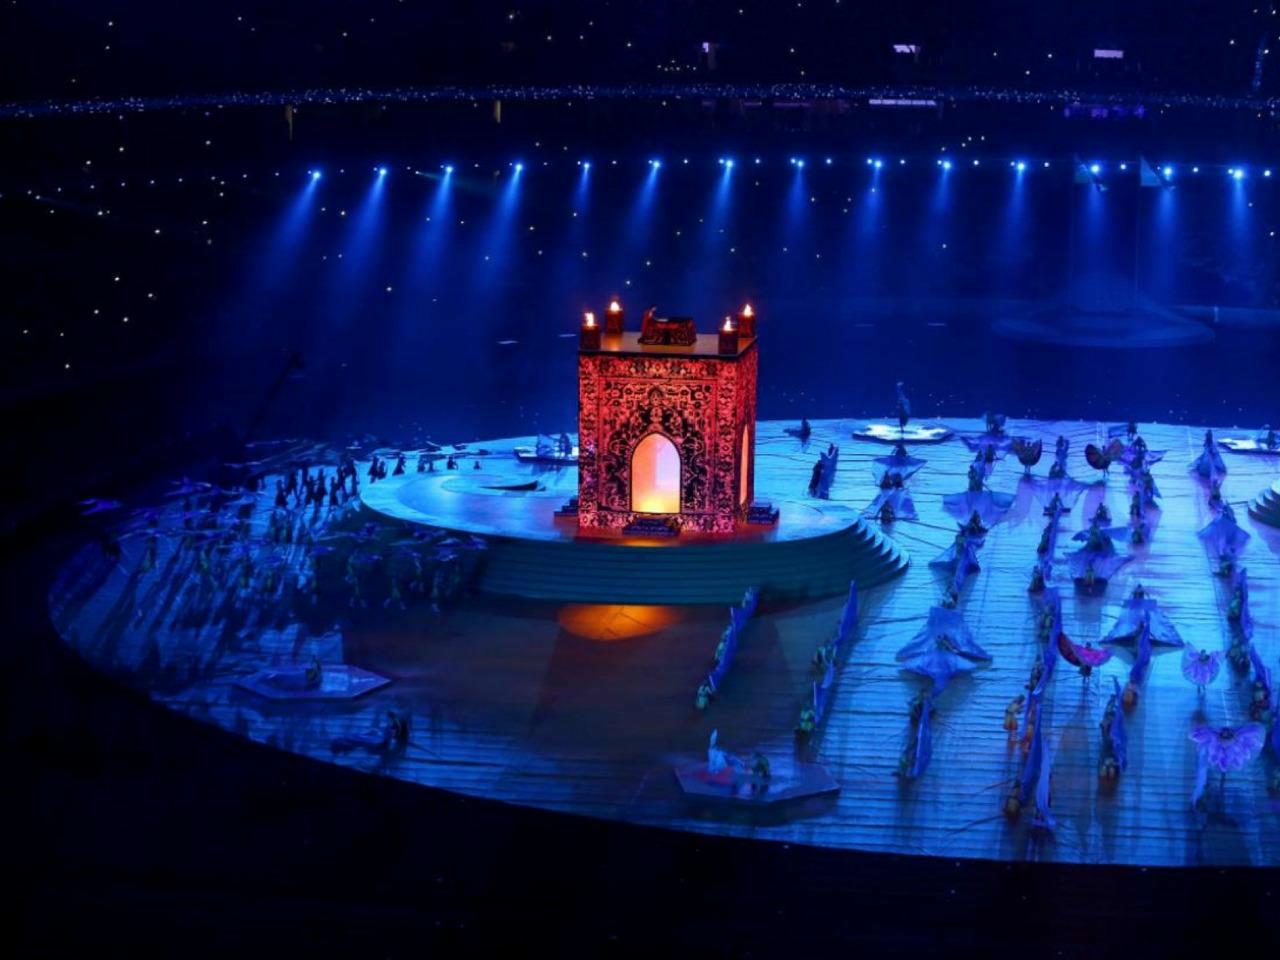 Baku 2015 1st European Games - Closing Ceremony (AZE)